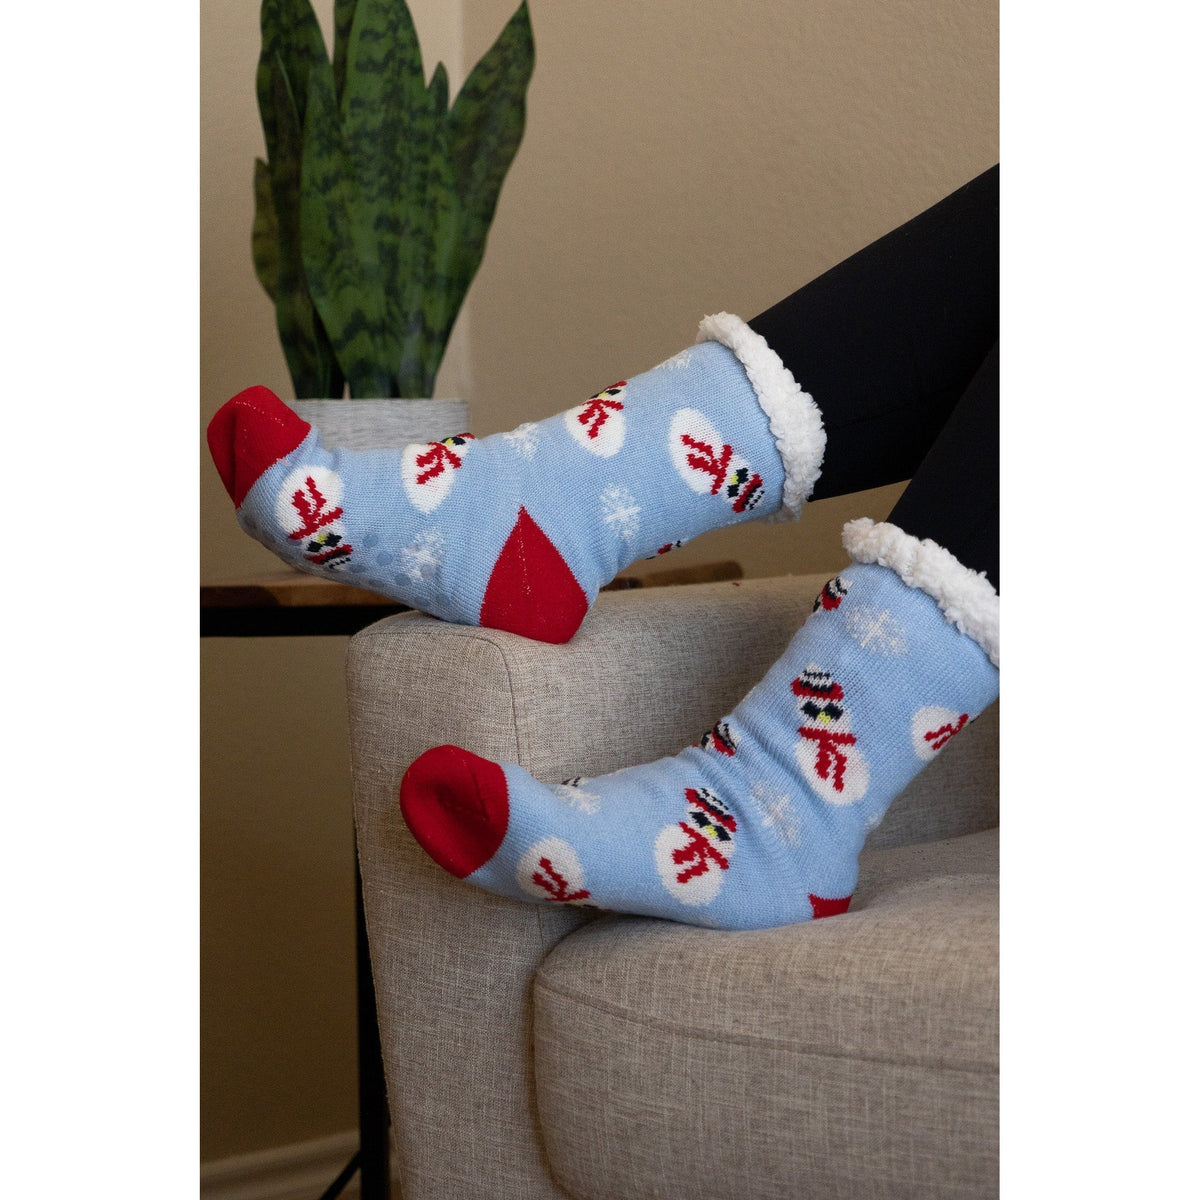 Ready to Ship | The Mary - Festive Cozy Holiday Socks